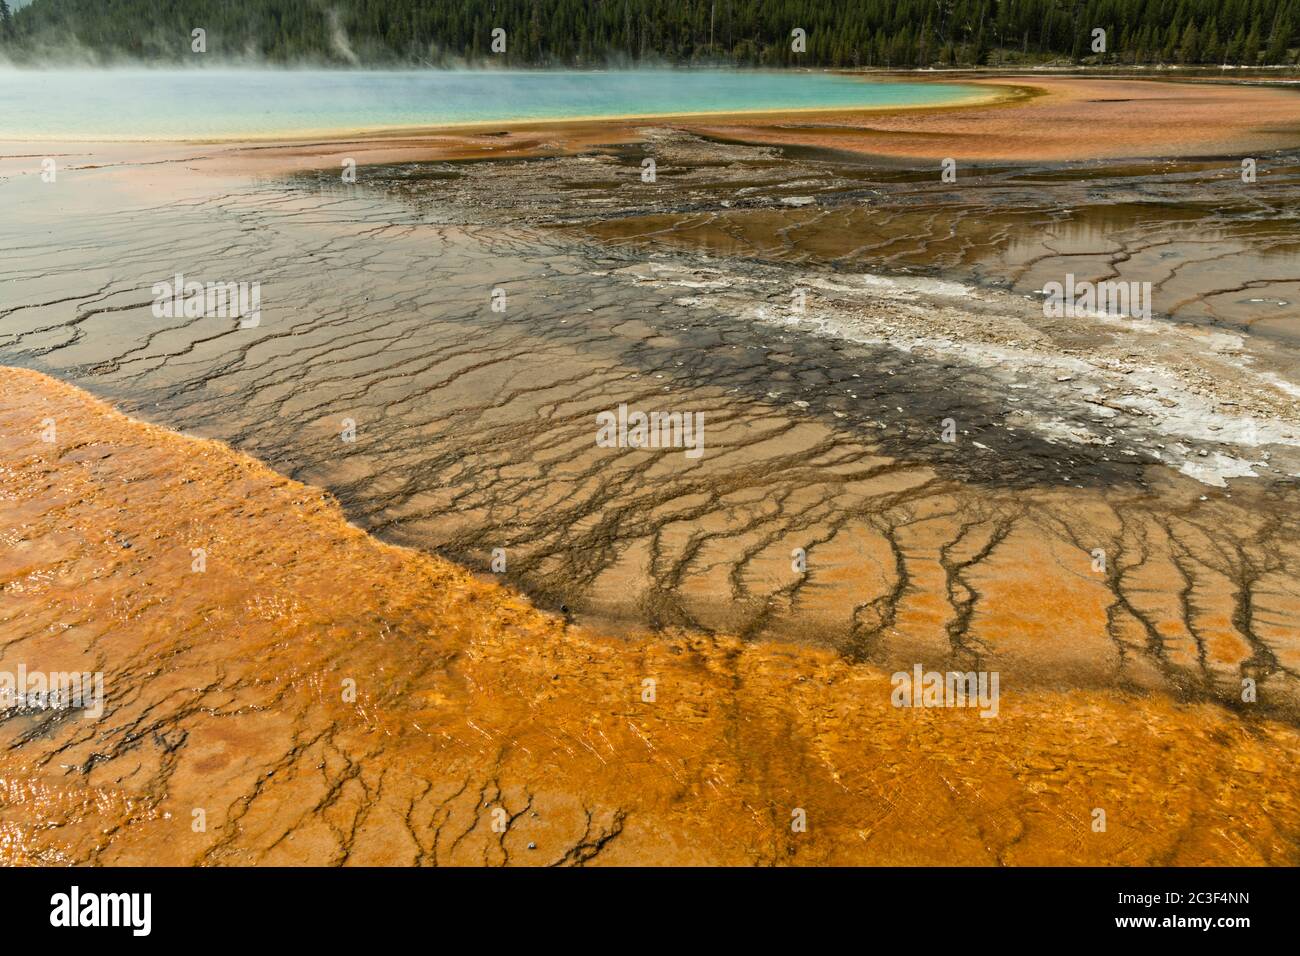 Des tapis de cyanobactéries colorés entourent le Grand Prismatic Spring, la plus grande source d'eau chaude du parc national de Yellowstone et la troisième plus grande au monde. Grand Prismatic a une taille d'environ 250 par 300 pieds, une moyenne de 160 degrés Fahrenheit et une profondeur de 160 pieds. Les couleurs vives autour du printemps sont des micro-organismes qui poussent dans le ruissellement d'eau chaude. Le Grand Prismatic Spring fait partie du Midway Geyser Basin Excelsior Group à Yellowstone, Wyoming. Banque D'Images